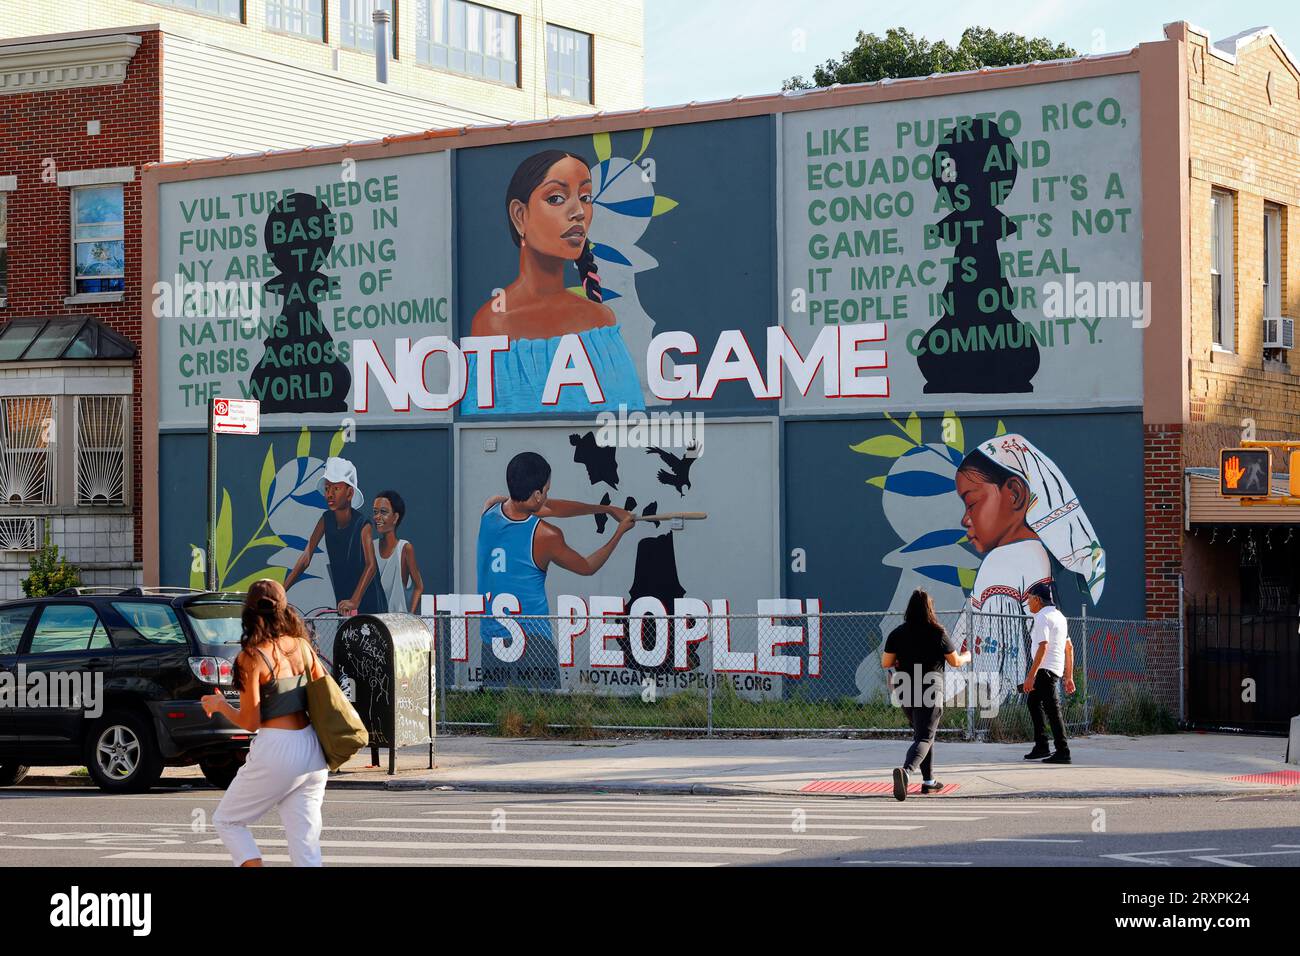 Une murale de New York proclamant « ce n'est pas Un jeu, c'est les gens ! » il s'agit de fonds spéculatifs vautours qui profitent de nations économiquement instables en crise. Banque D'Images